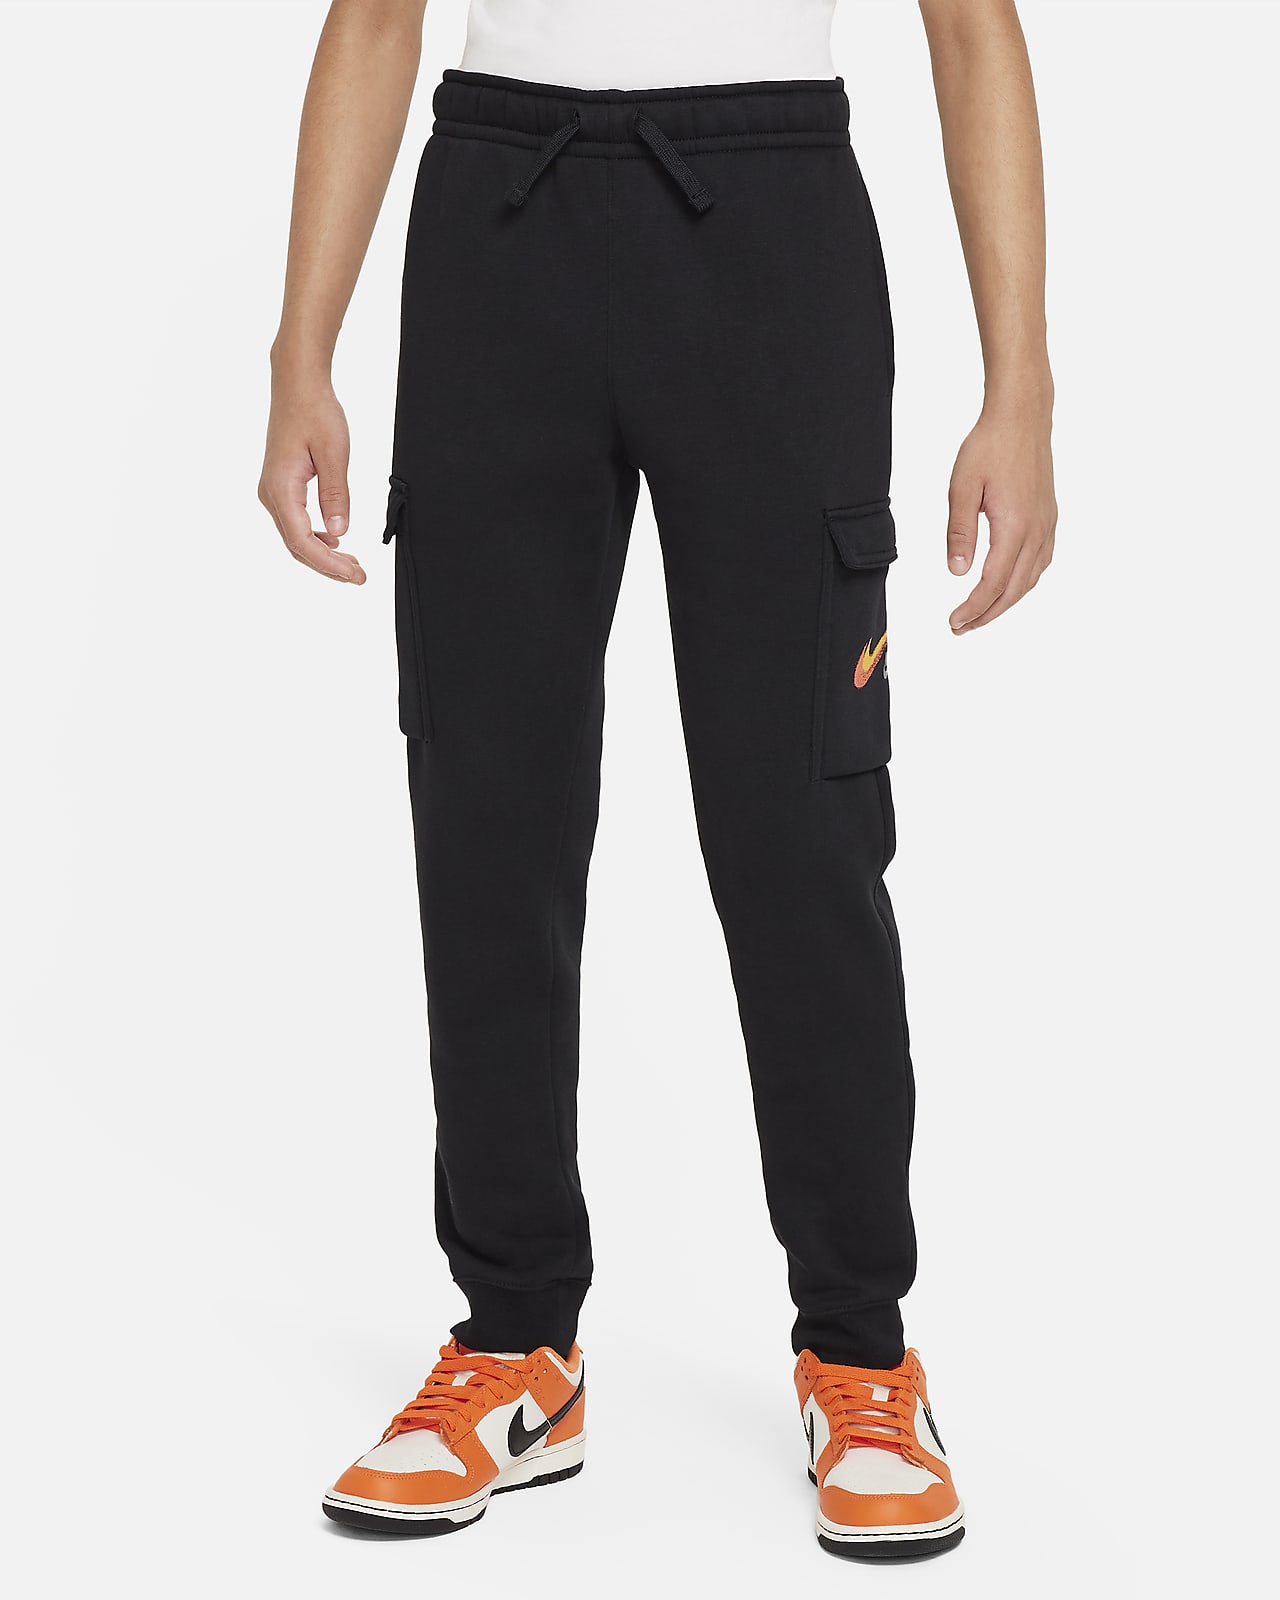 Flísové cargo kalhoty Nike Sportswear s grafickým motivem pro větší děti (chlapce)